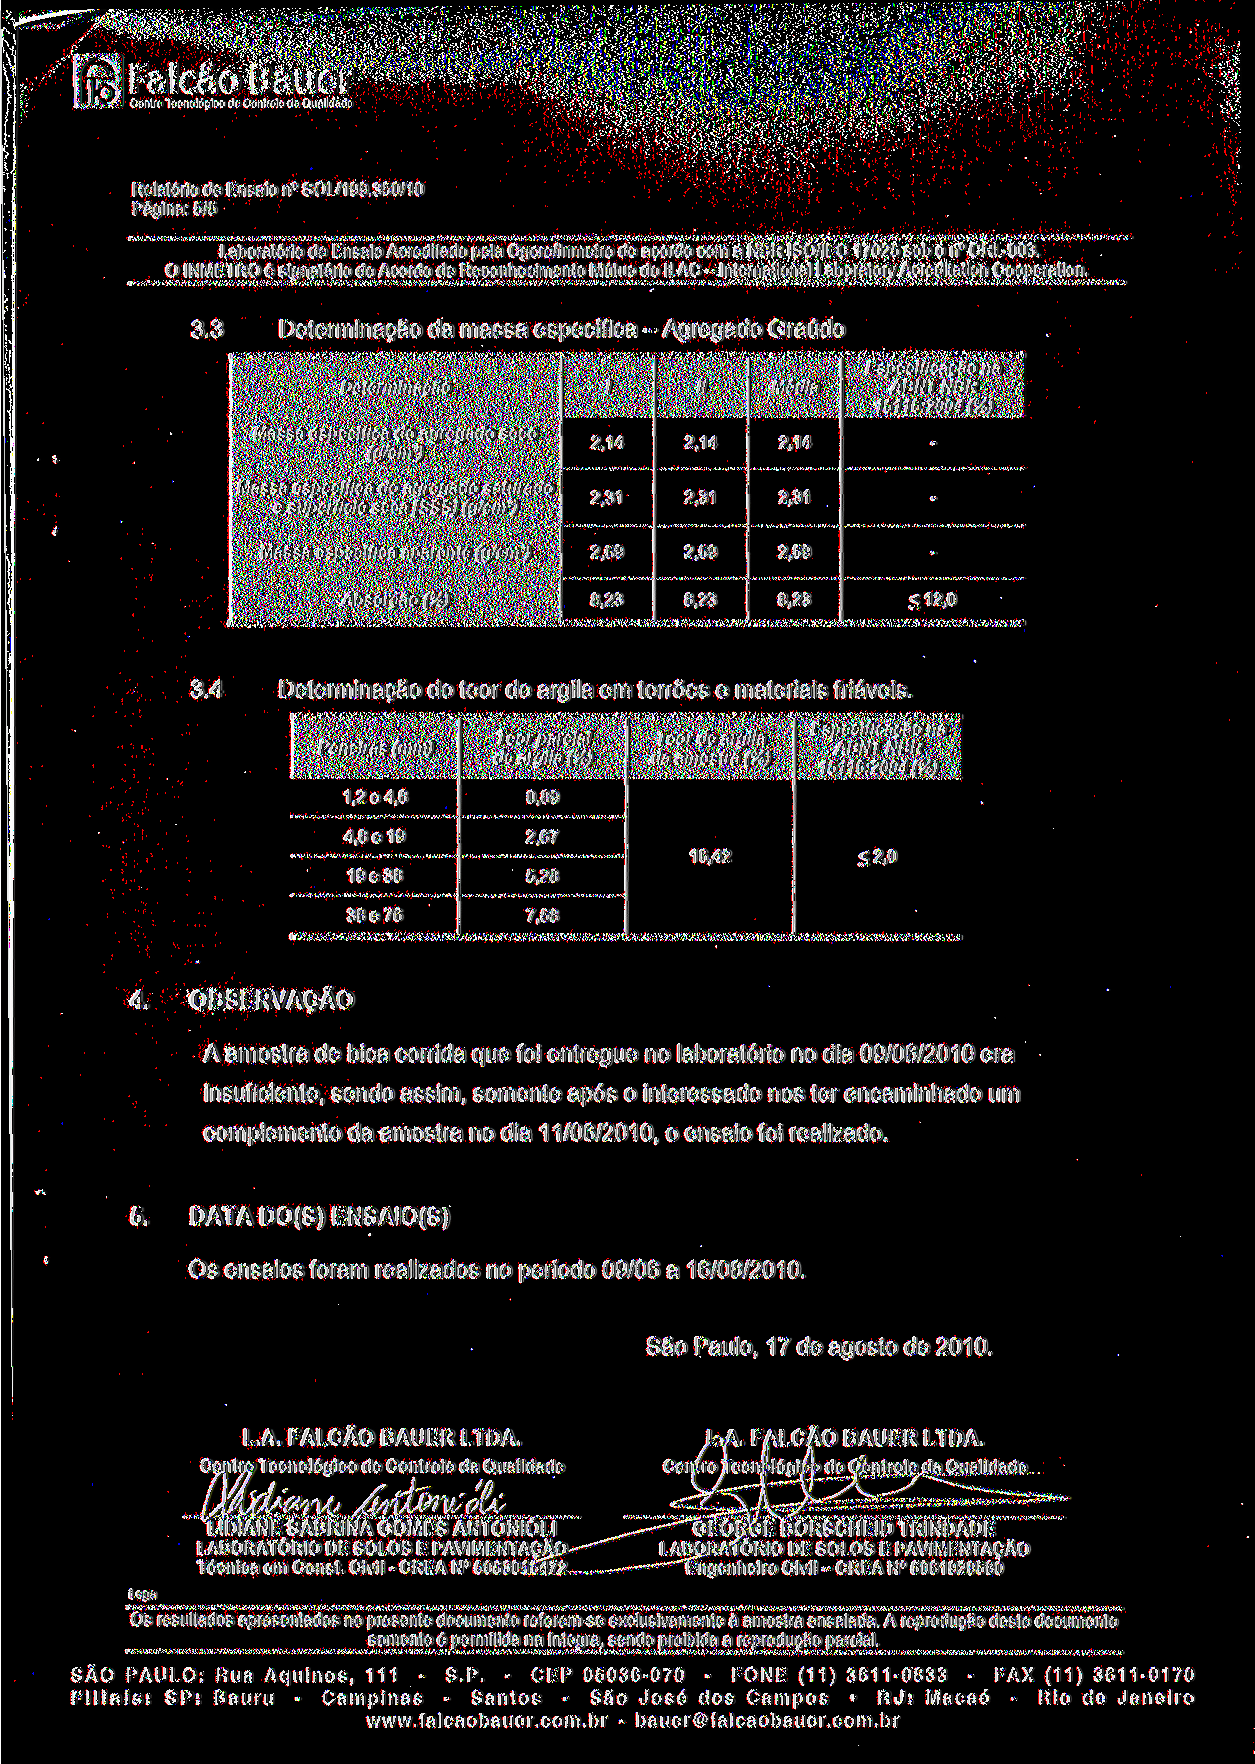 ^ Falcão Bauer Página: 5/5 Laboratório de Ensaio Acreditado pela Cgcre/lnmetro de acordo com a NBR ISO/IEC 17025 sob o n CRL003. 3.3 3.4 4.